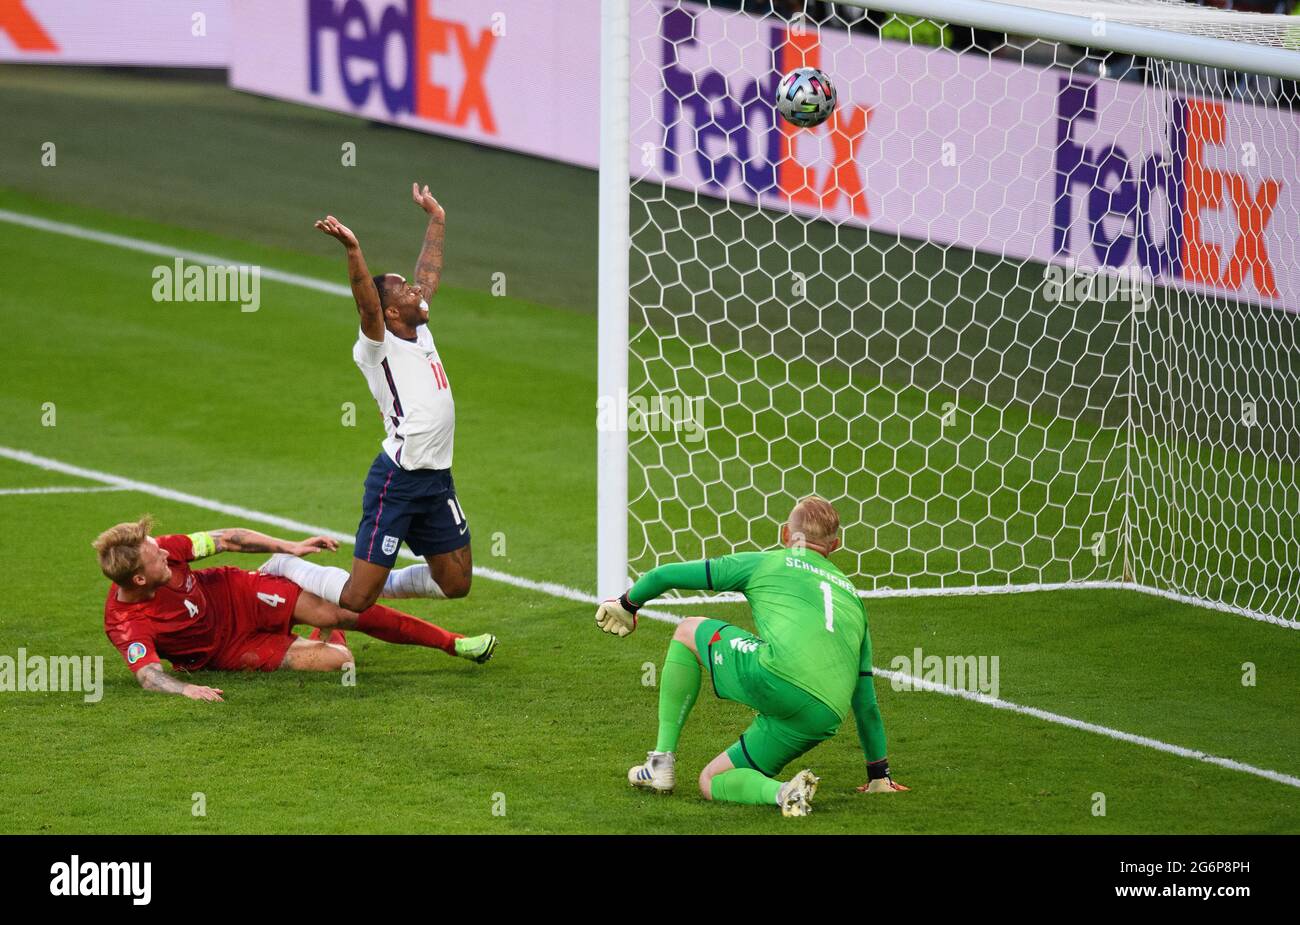 Londres, Royaume-Uni. Londres, Angleterre. 7 juillet 2021.Simon Kjaer marque un égalisateur de but pour l'Angleterre lors du match semi-final de l'UEFA Euro 2020 au stade Wembley, Londres. Crédit : Mark pain/Alamy Live News Banque D'Images